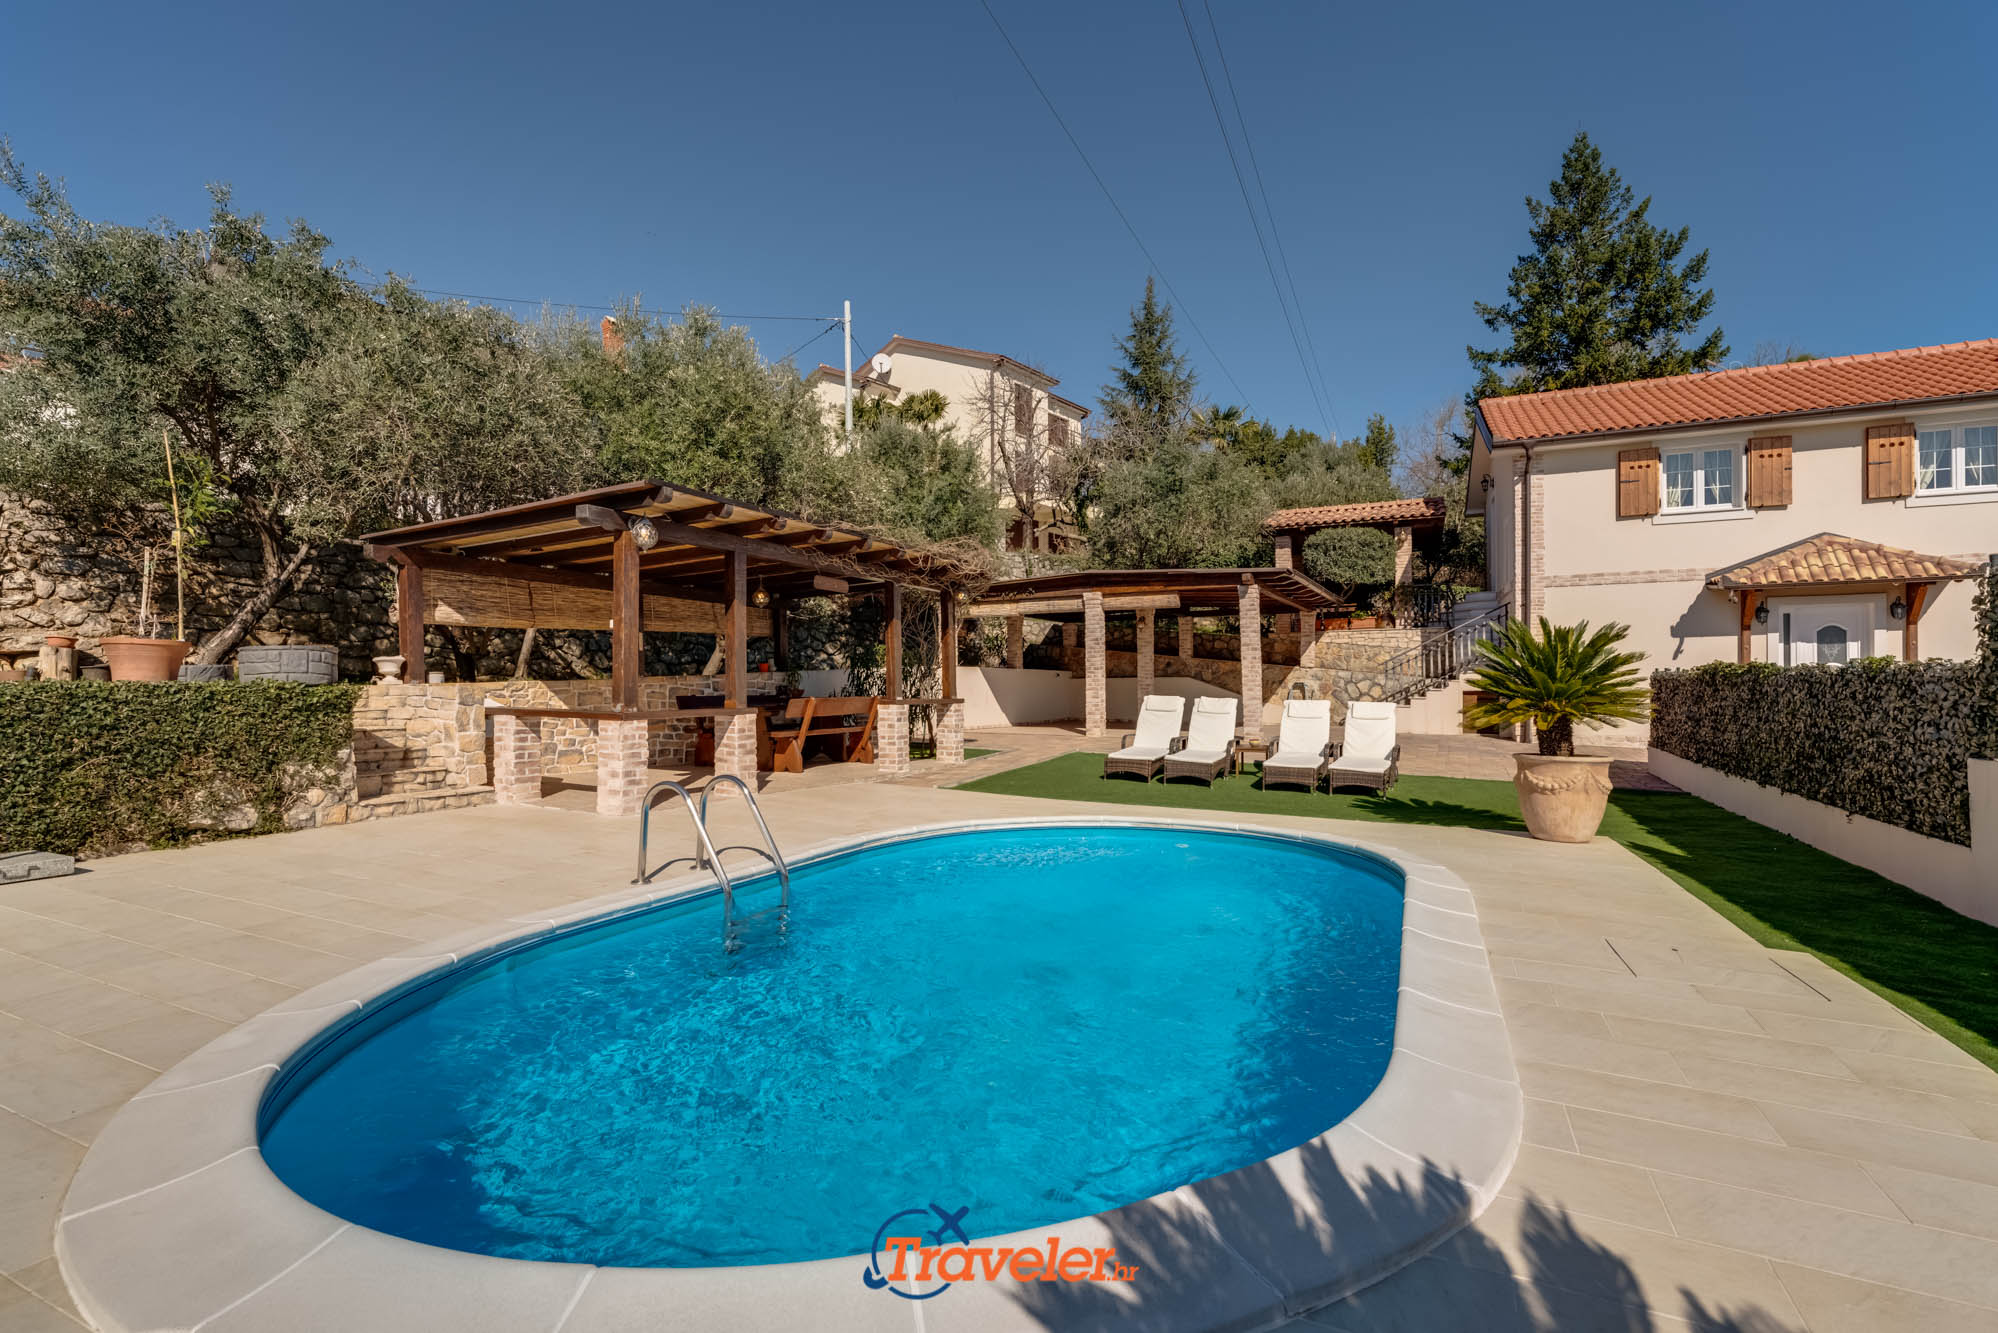 Ferienvilla mit Pool in Kroatien mit überdachter Terrasse